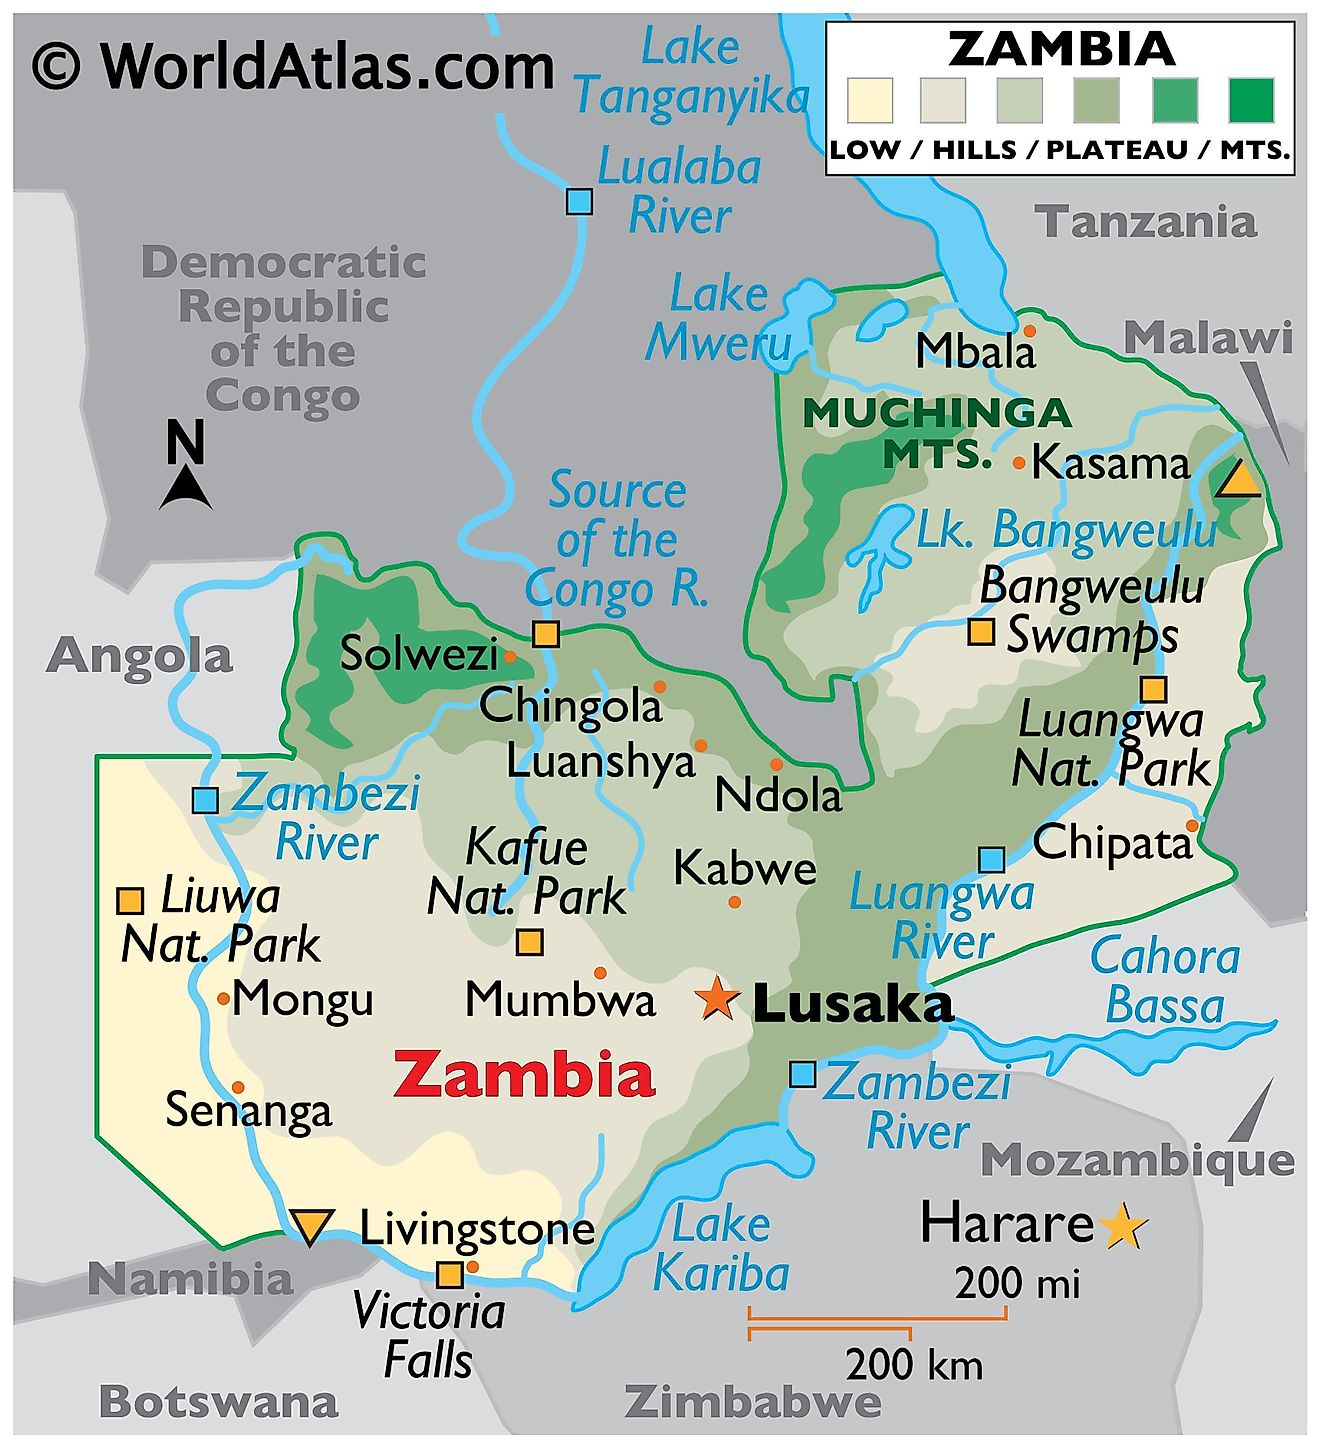 Mapa Físico de Zambia. Muestra las características físicas de Zambia, incluidas las principales cadenas montañosas, ríos, lagos y otras características naturales.